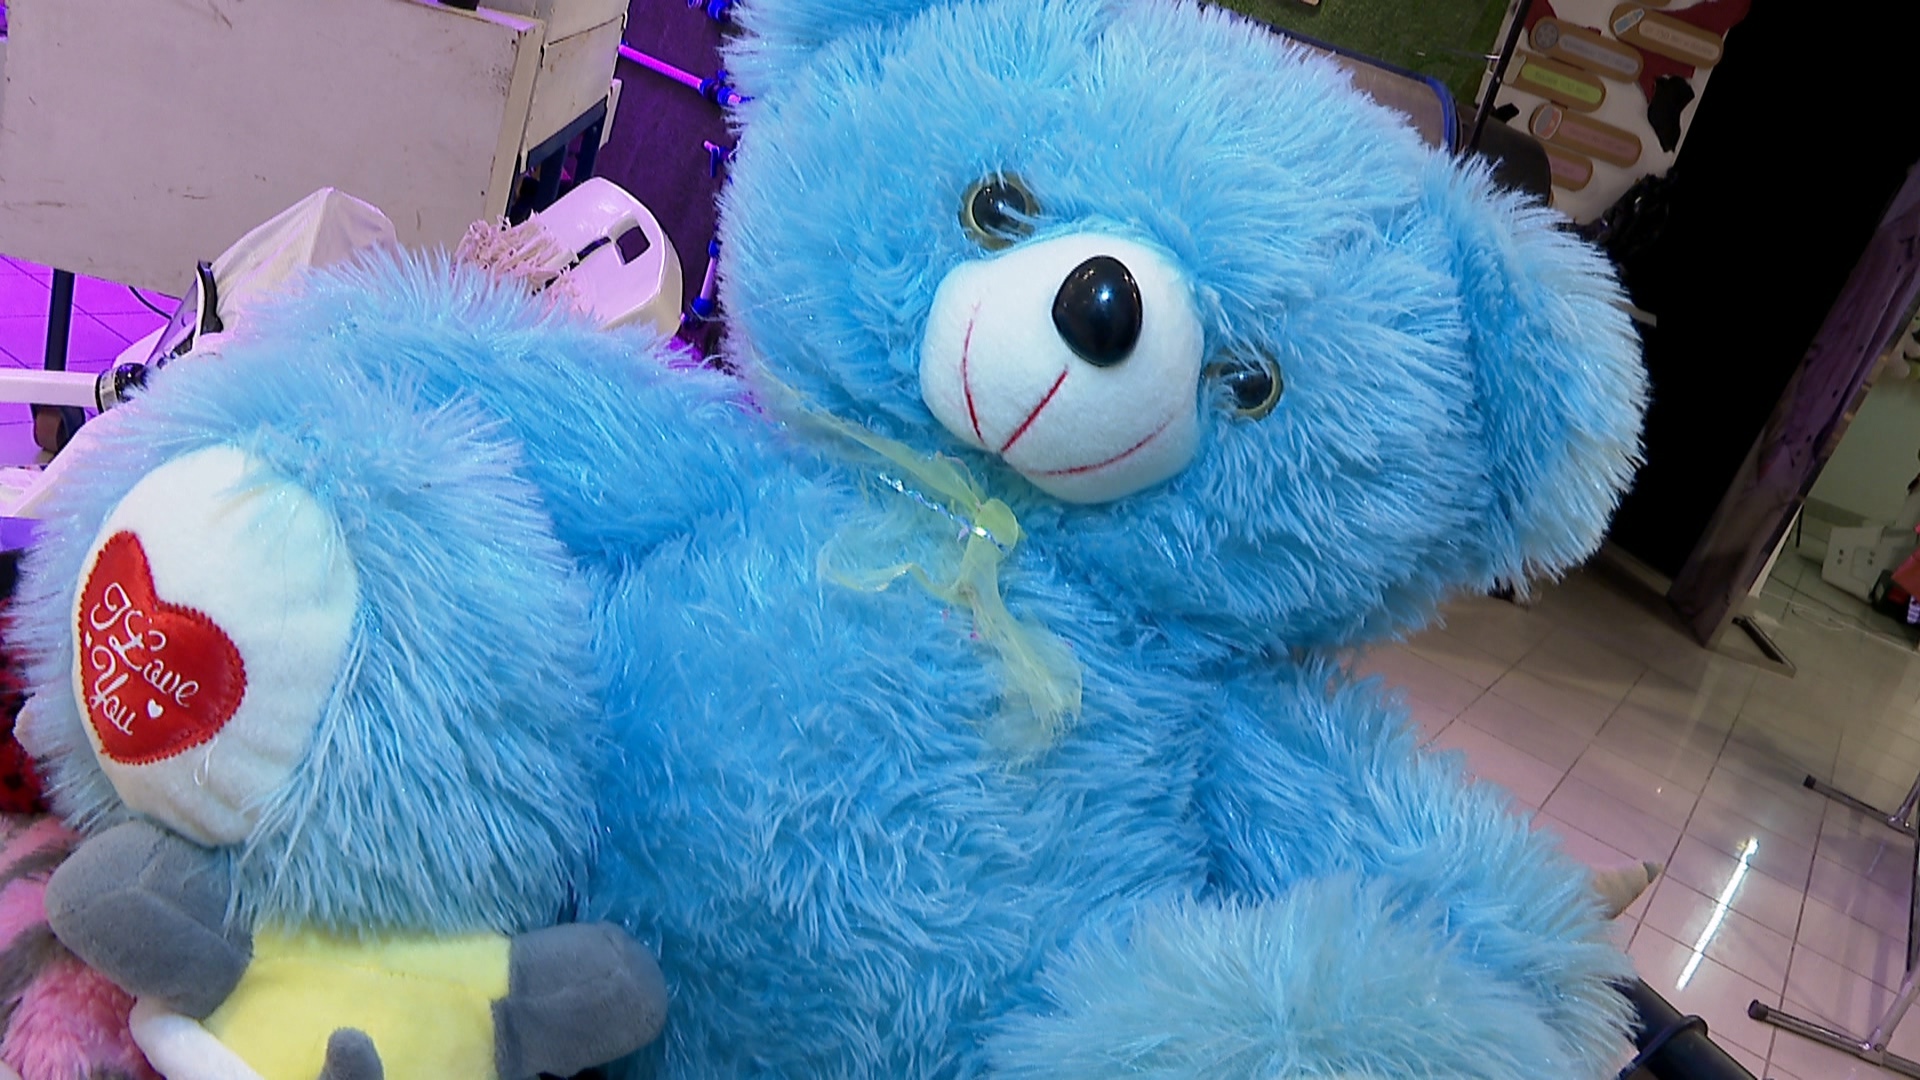 Приют для мягких игрушек: в Челябинске организовали сбор медведей и кукол